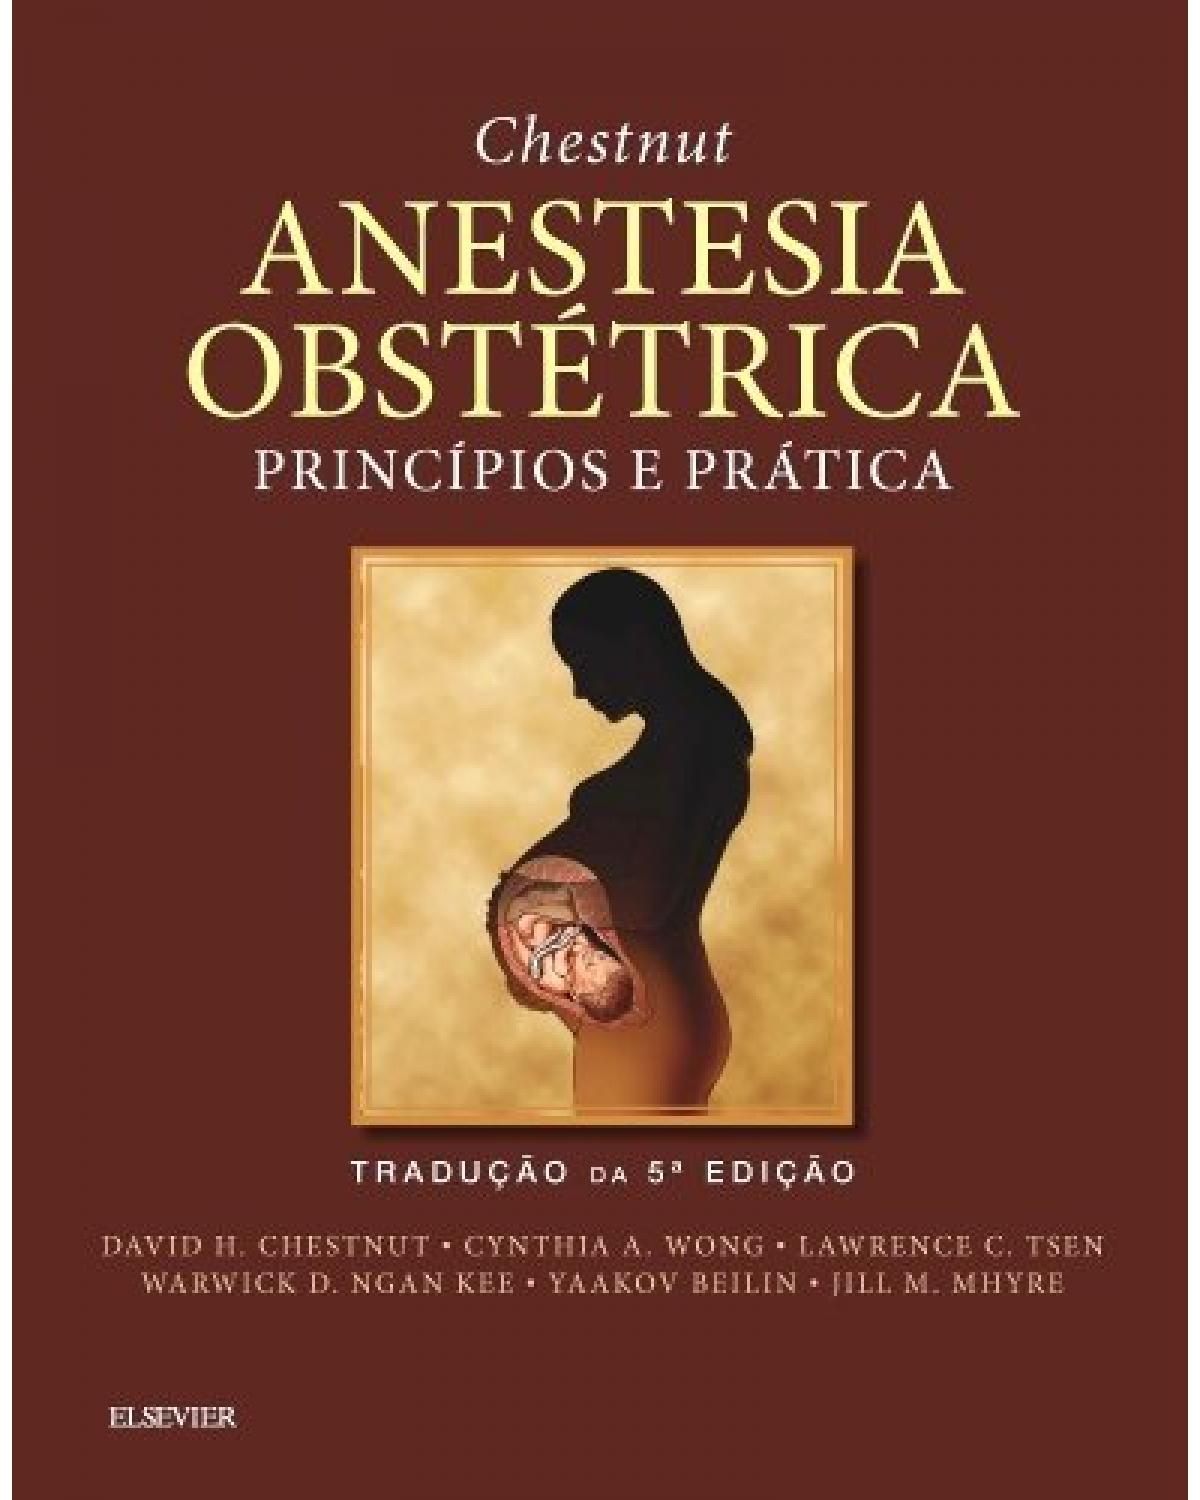 Chestnut - Anestesia obstétrica - 5ª Edição | 2016